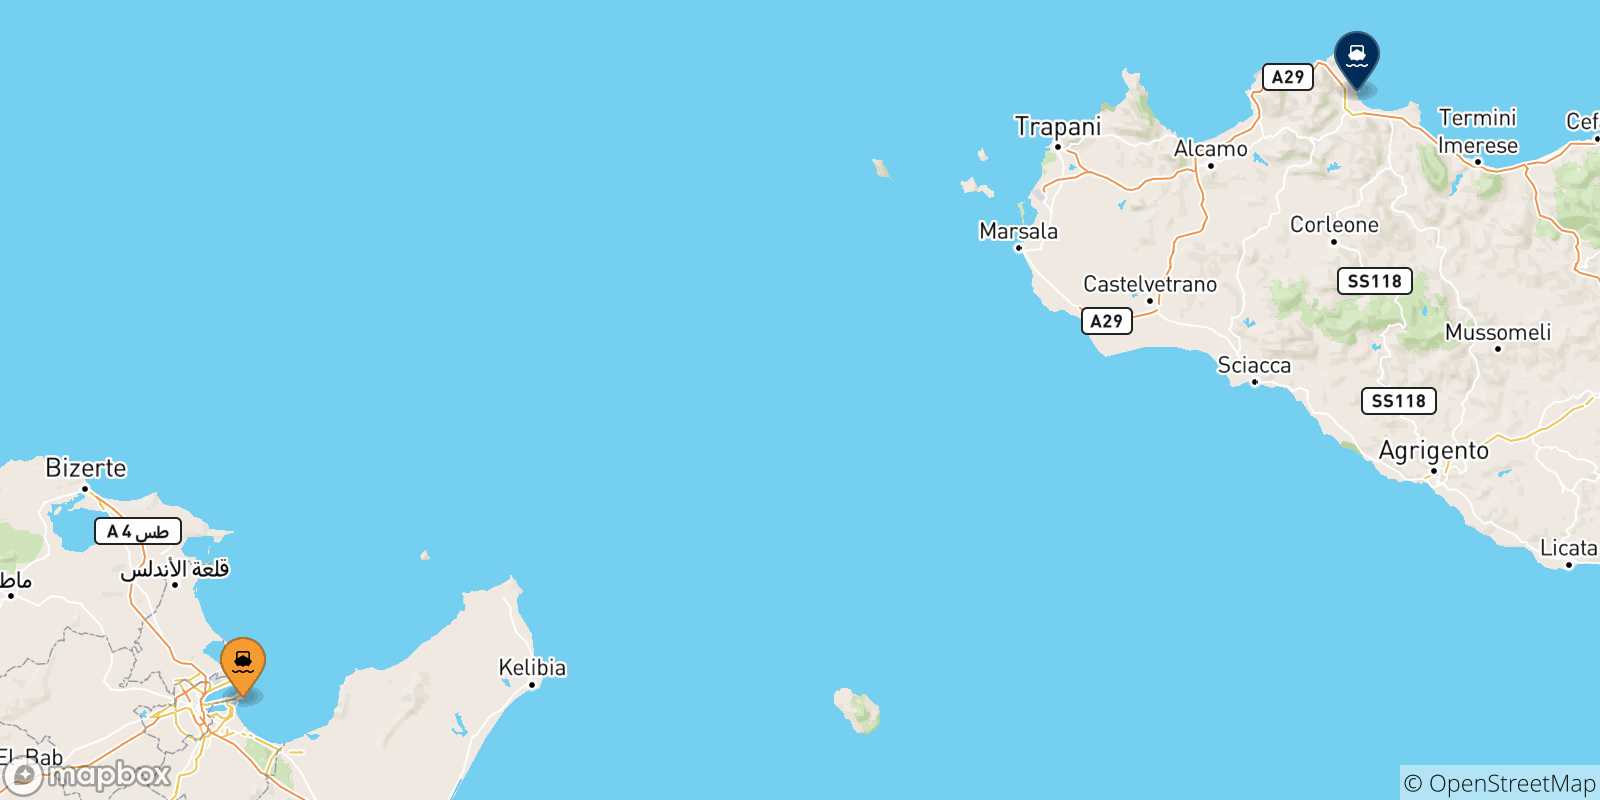 Mappa delle possibili rotte tra la Tunisia e Palermo